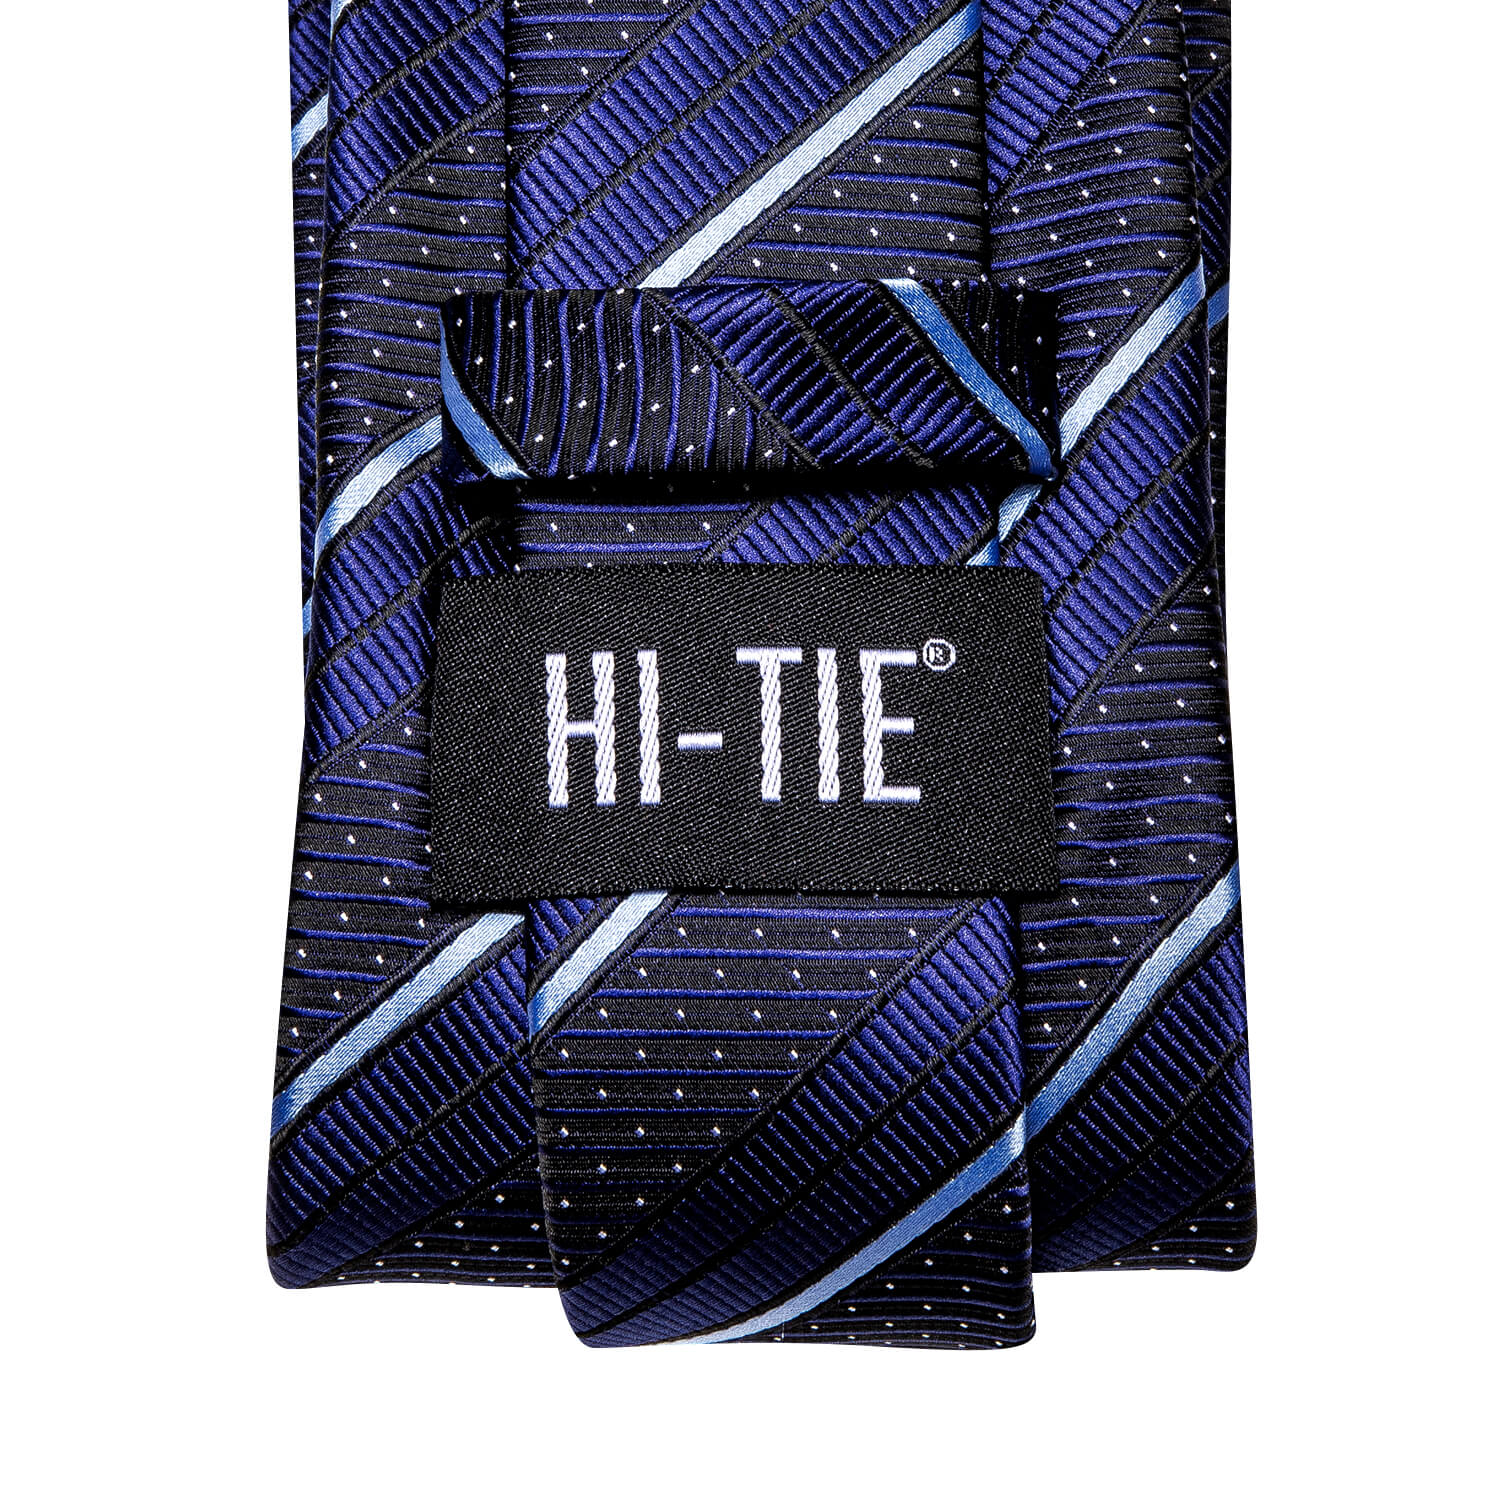 Hi-Tie Dark Blue Tie with White Stripes Pocket Square Cufflinks Set